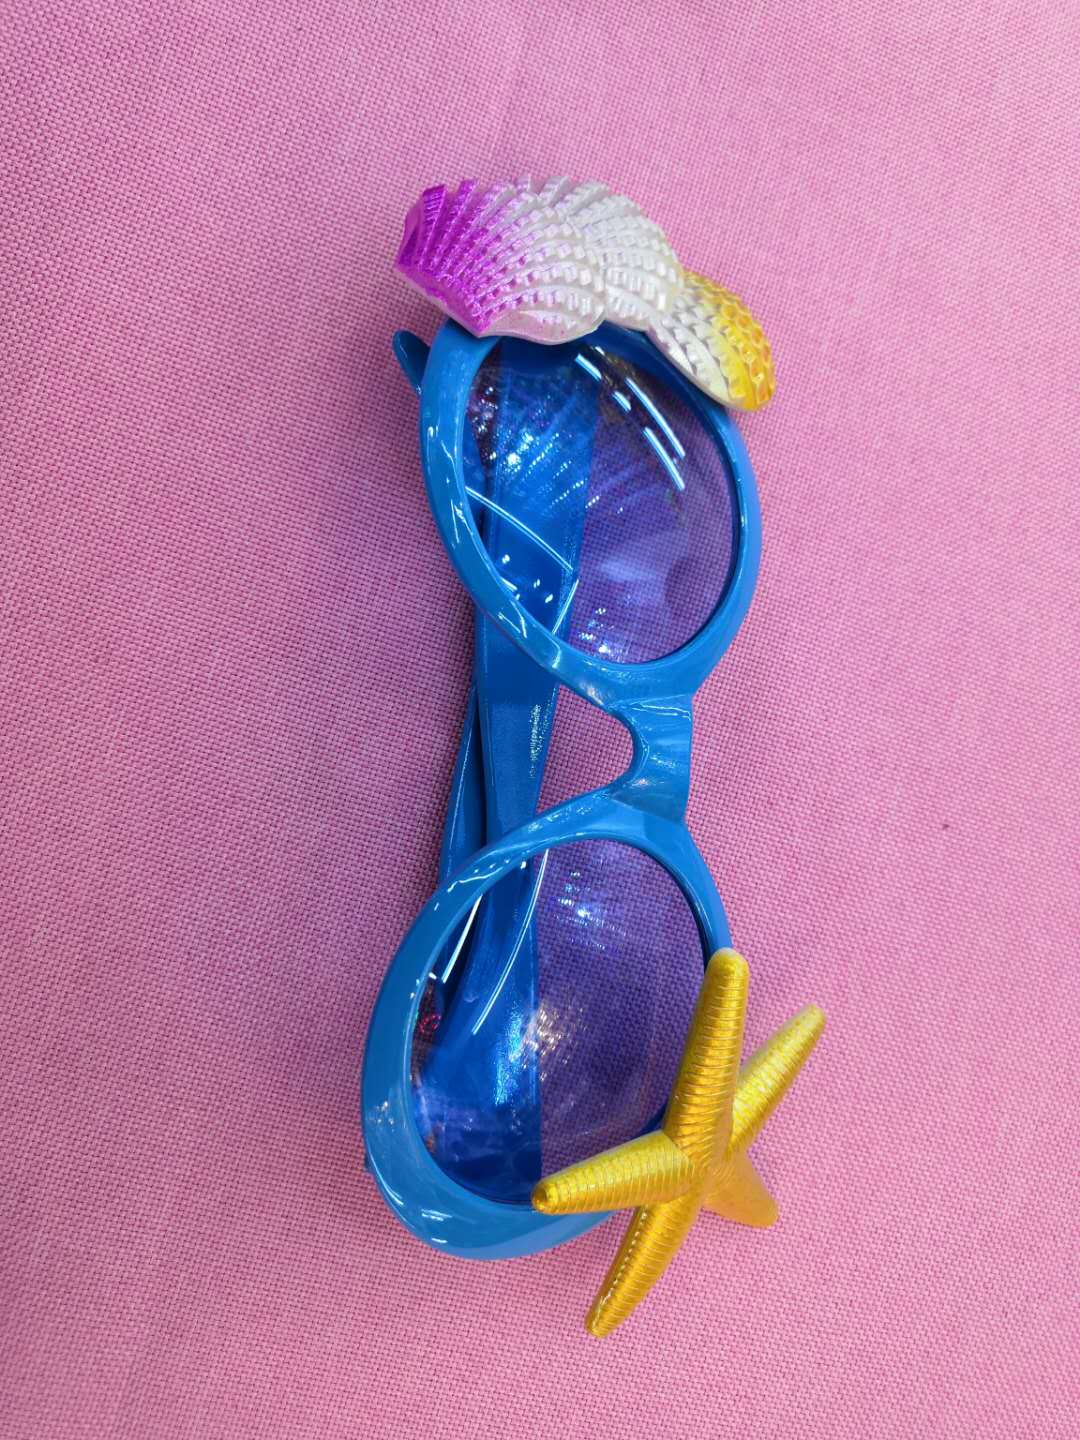 派对搞怪眼镜海星面具眼镜复活节派对搞怪眼镜聚会玩具图